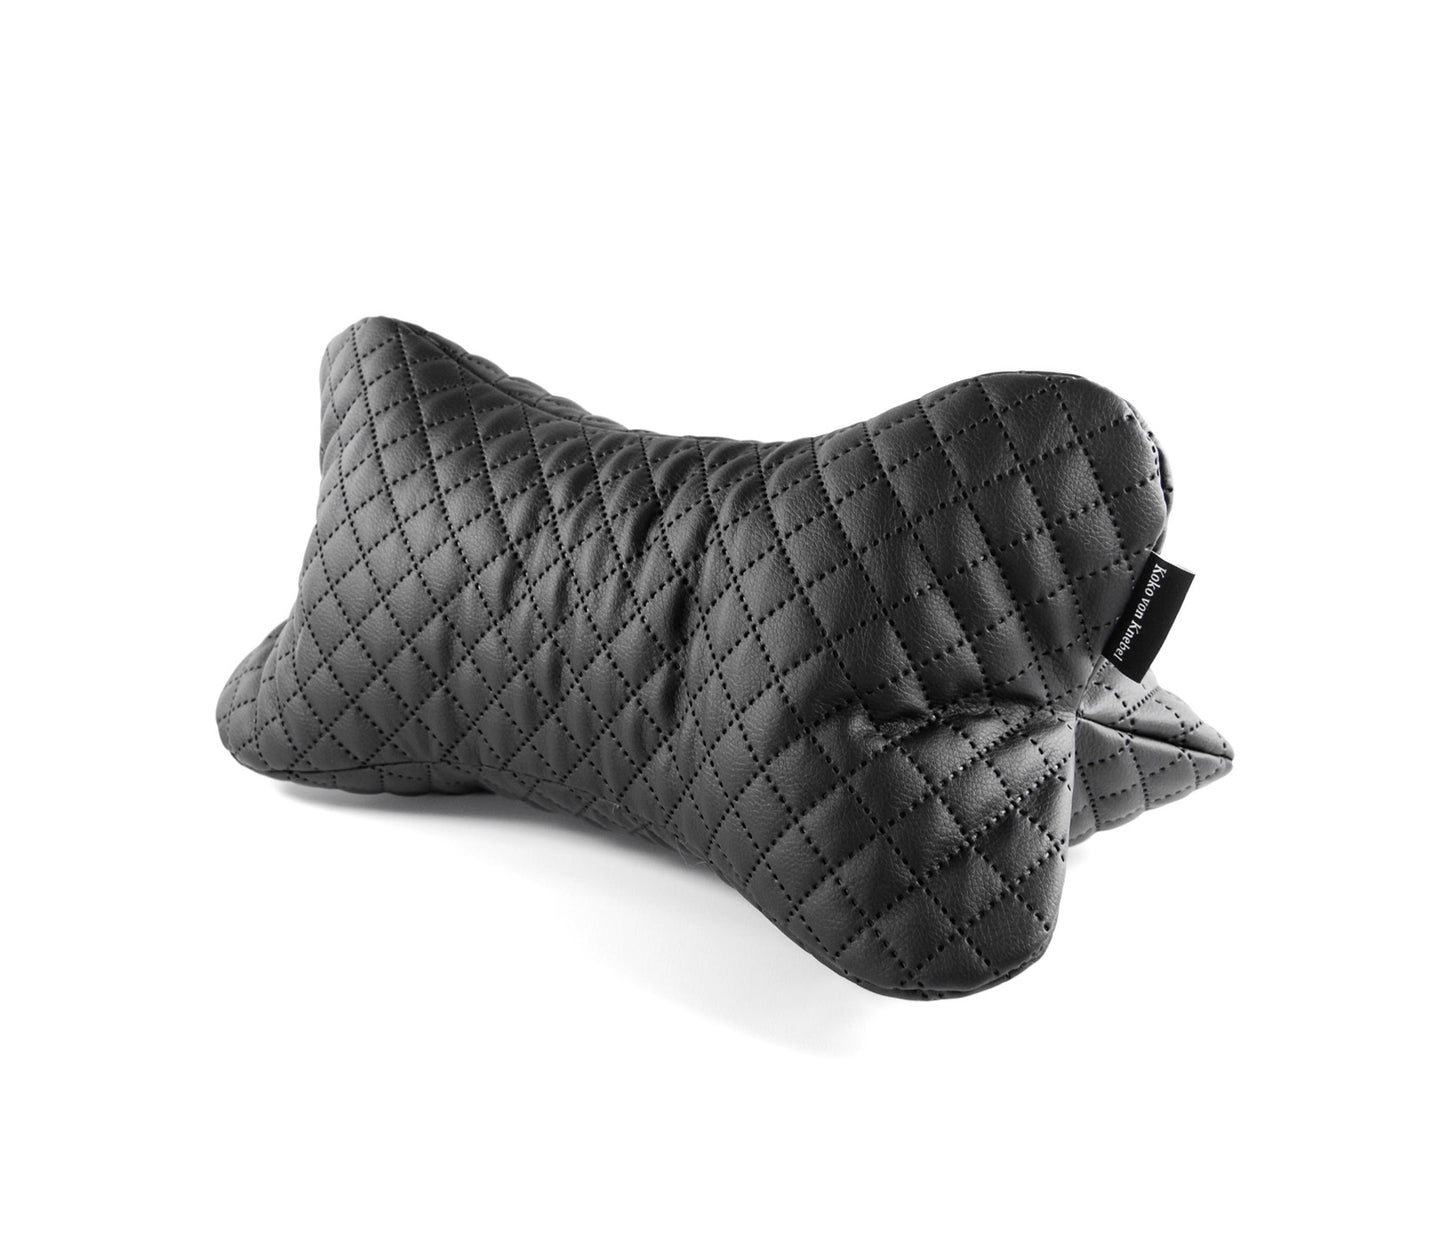 KvK Bone Pillow - bone pillow for 2 & 4 legs